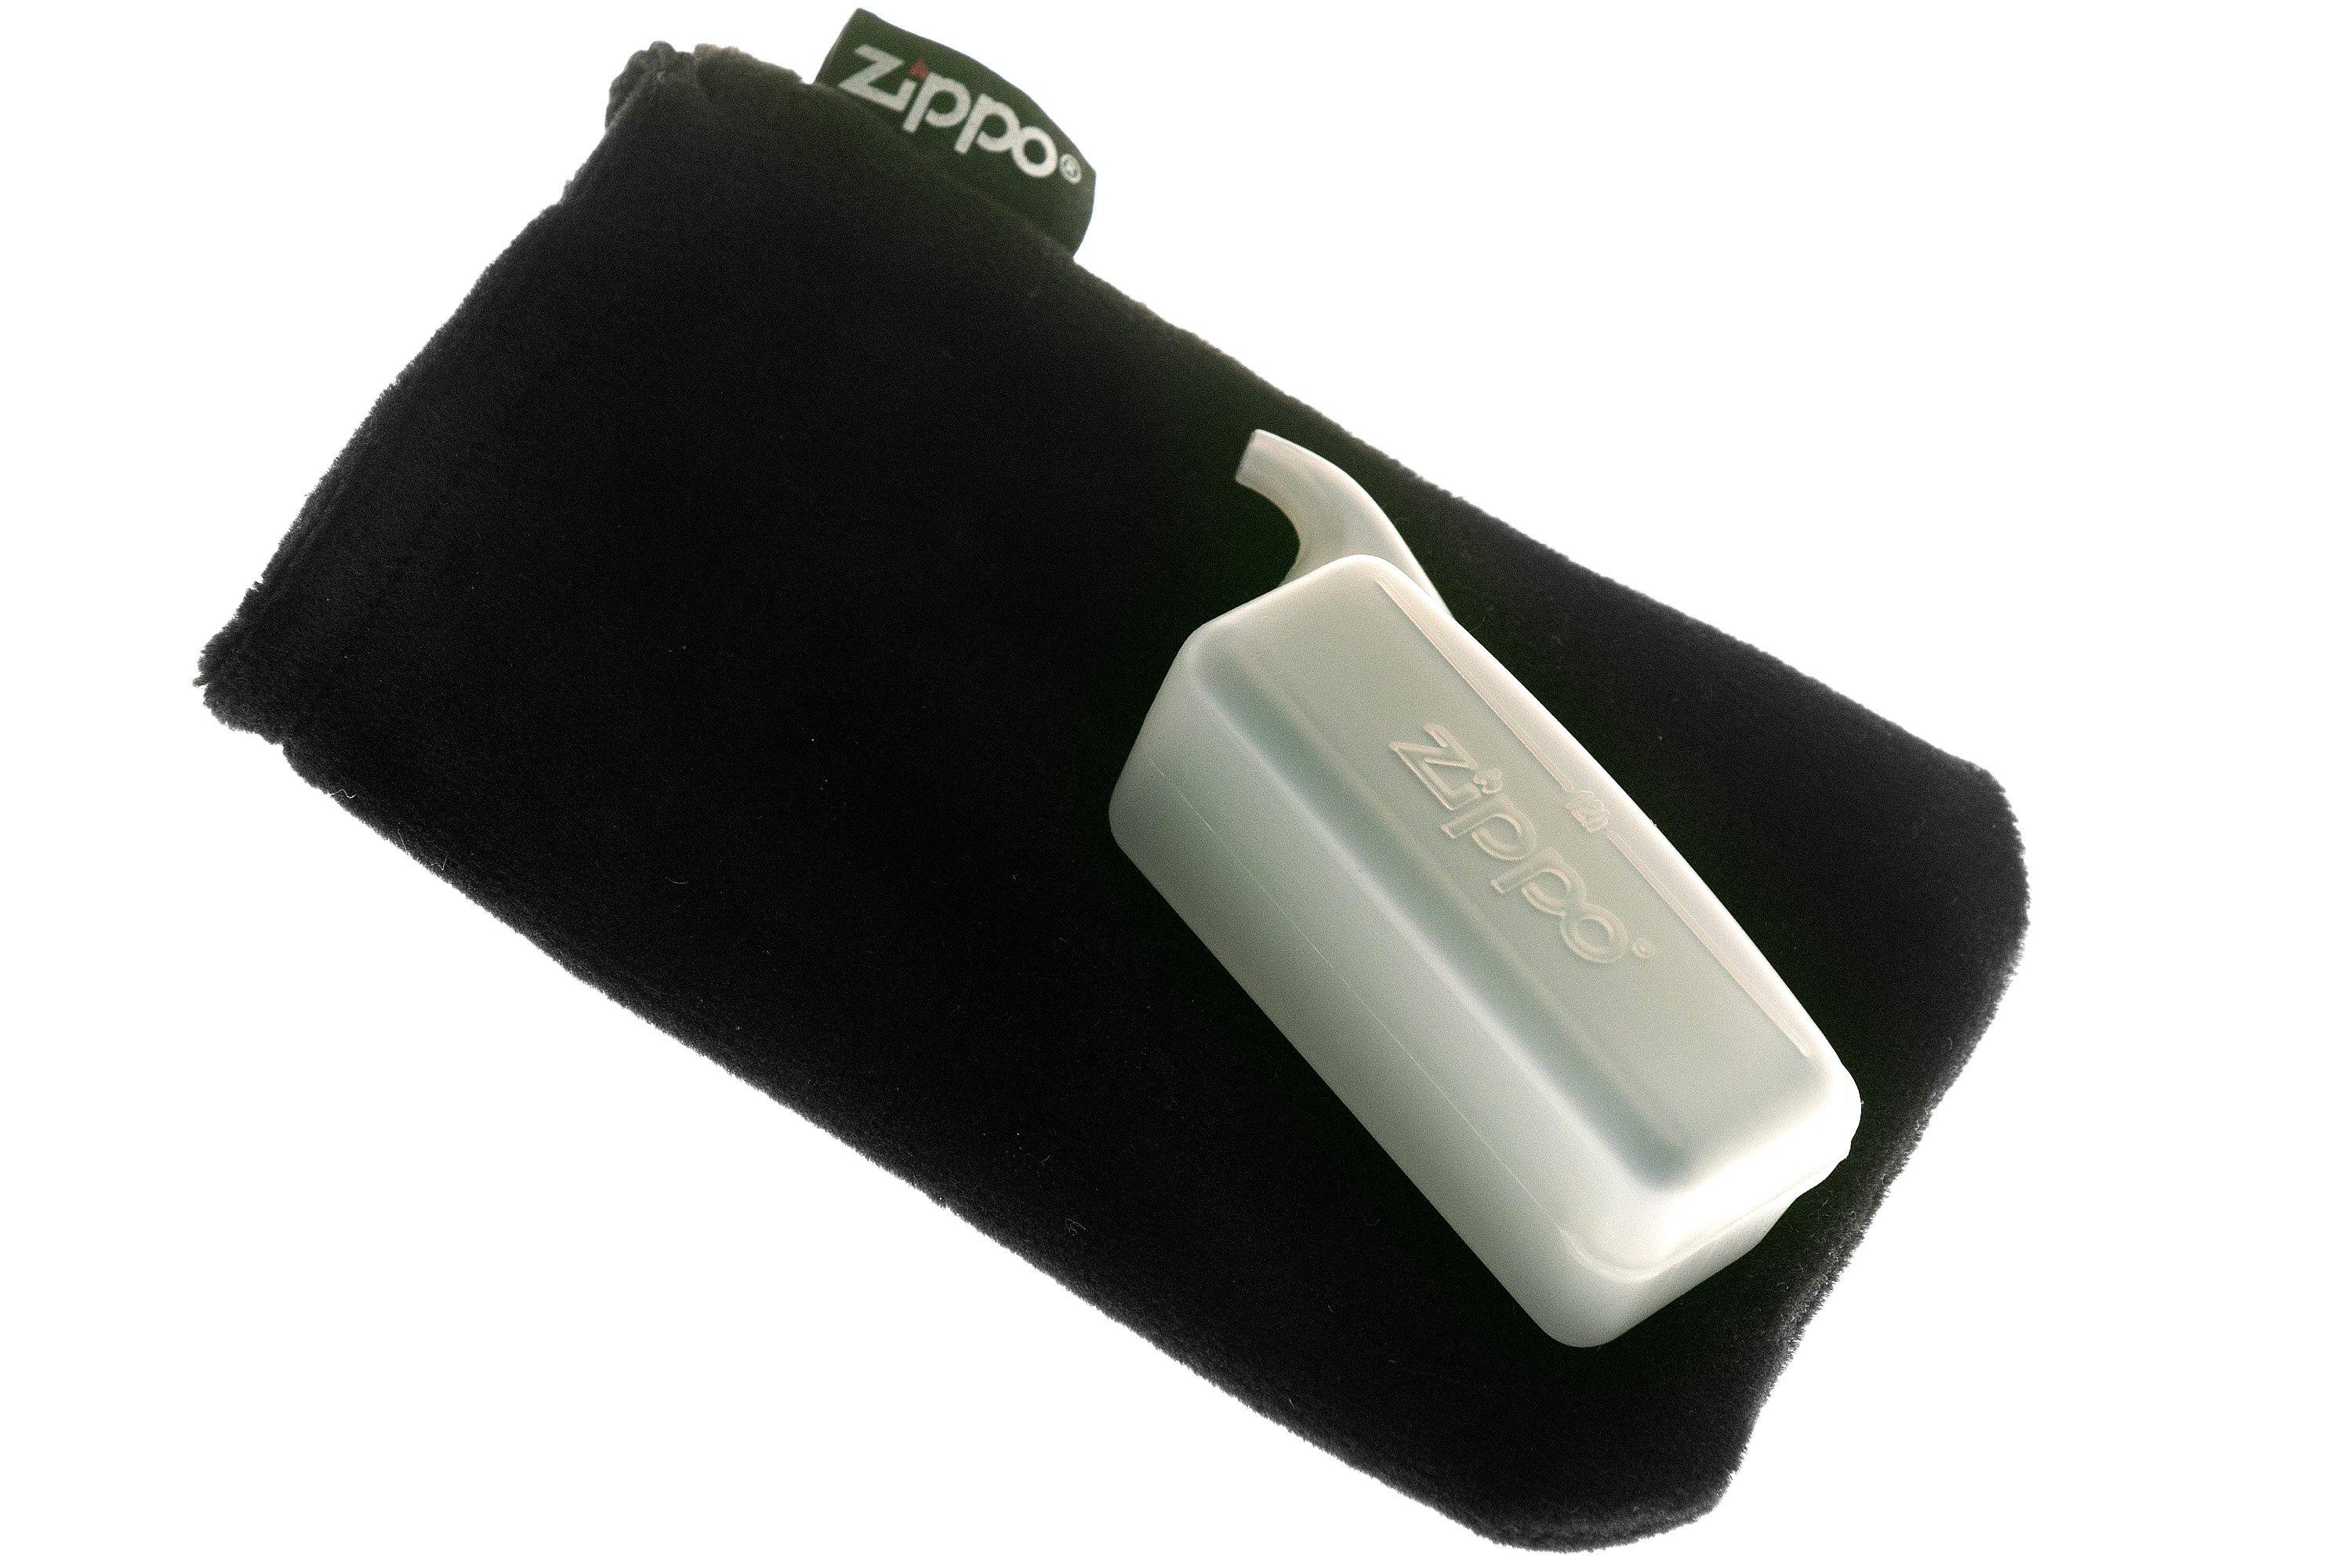 Achat en ligne chauffe-mains rechargeables, Zippo